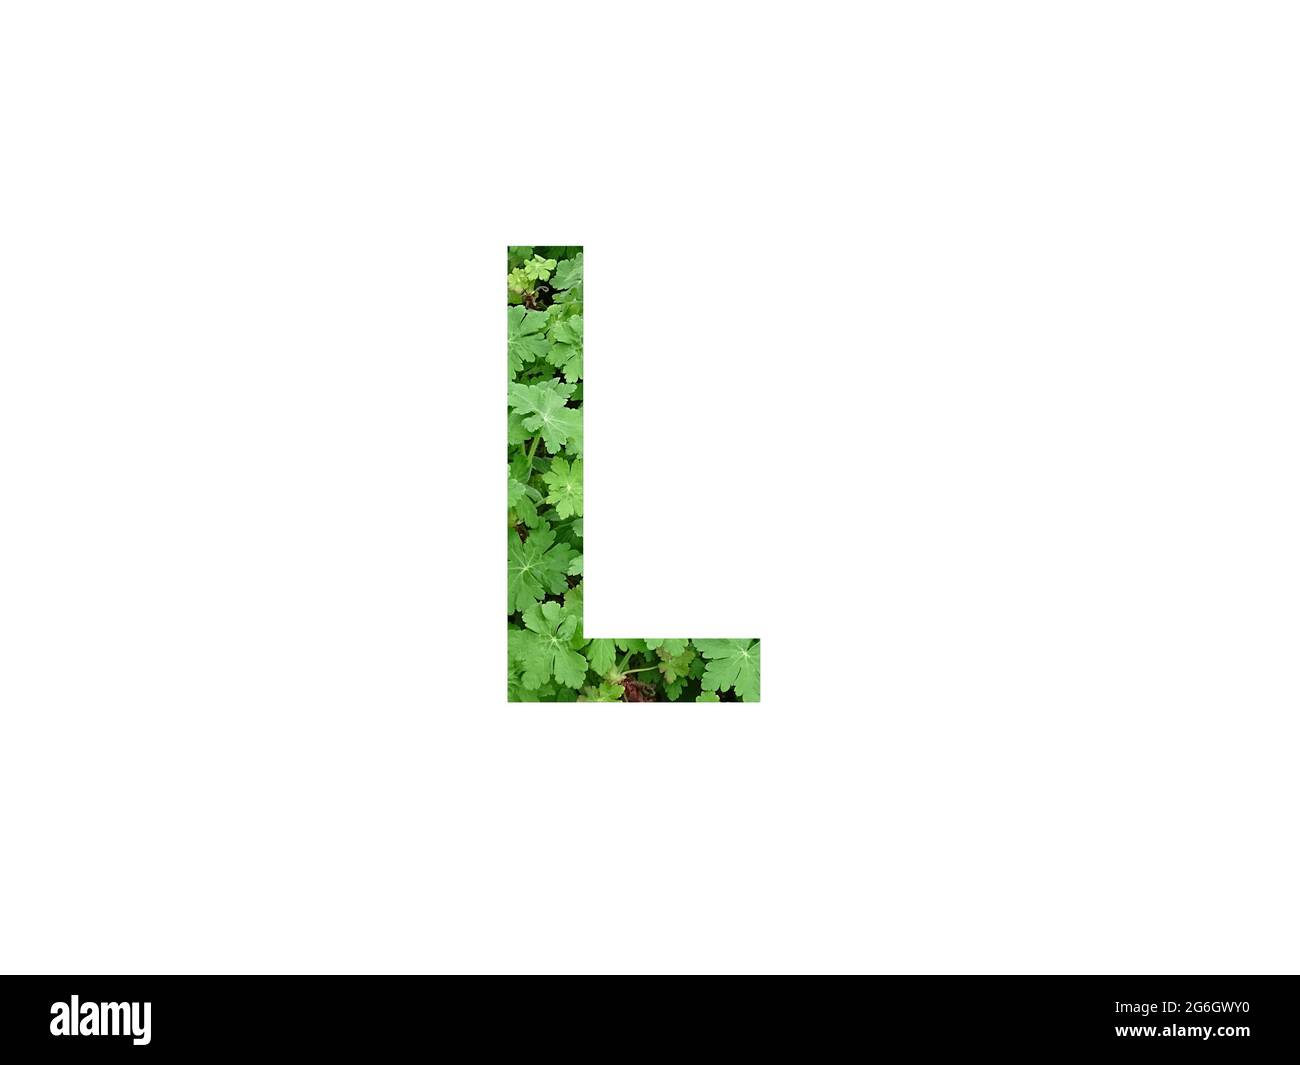 Lettre L de l'alphabet faite avec une feuille verte de géranium, isolée sur fond blanc Banque D'Images